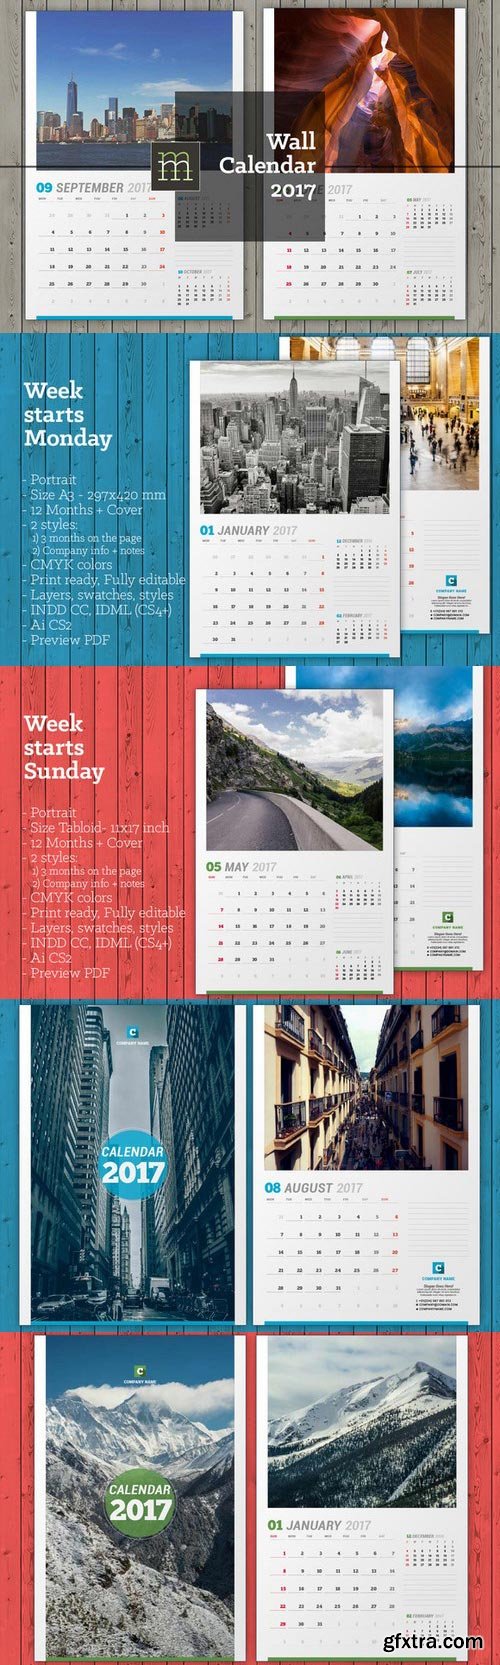 CM - Wall Calendar 2017 (WC15) 699471